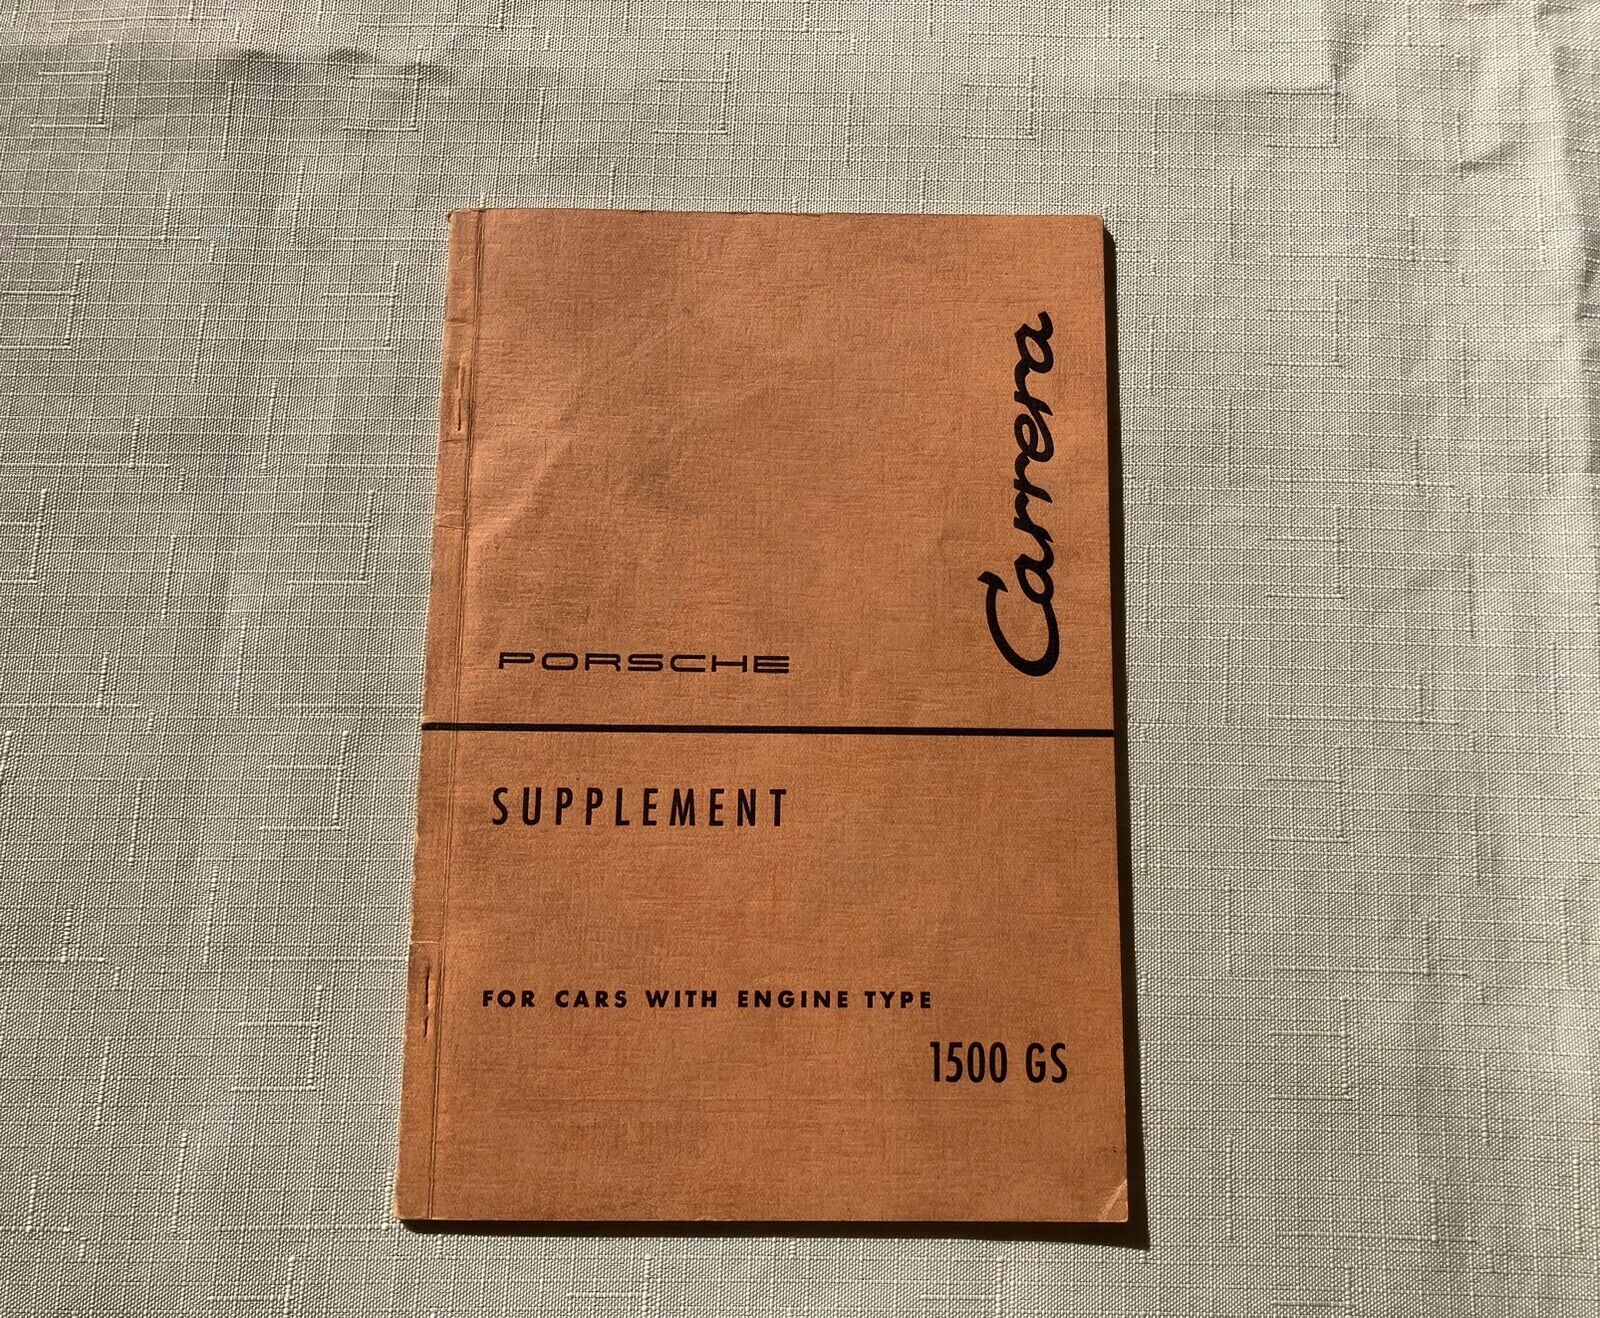 Porsche Carrera Supplement 1500 GS   (Edition October 1957)